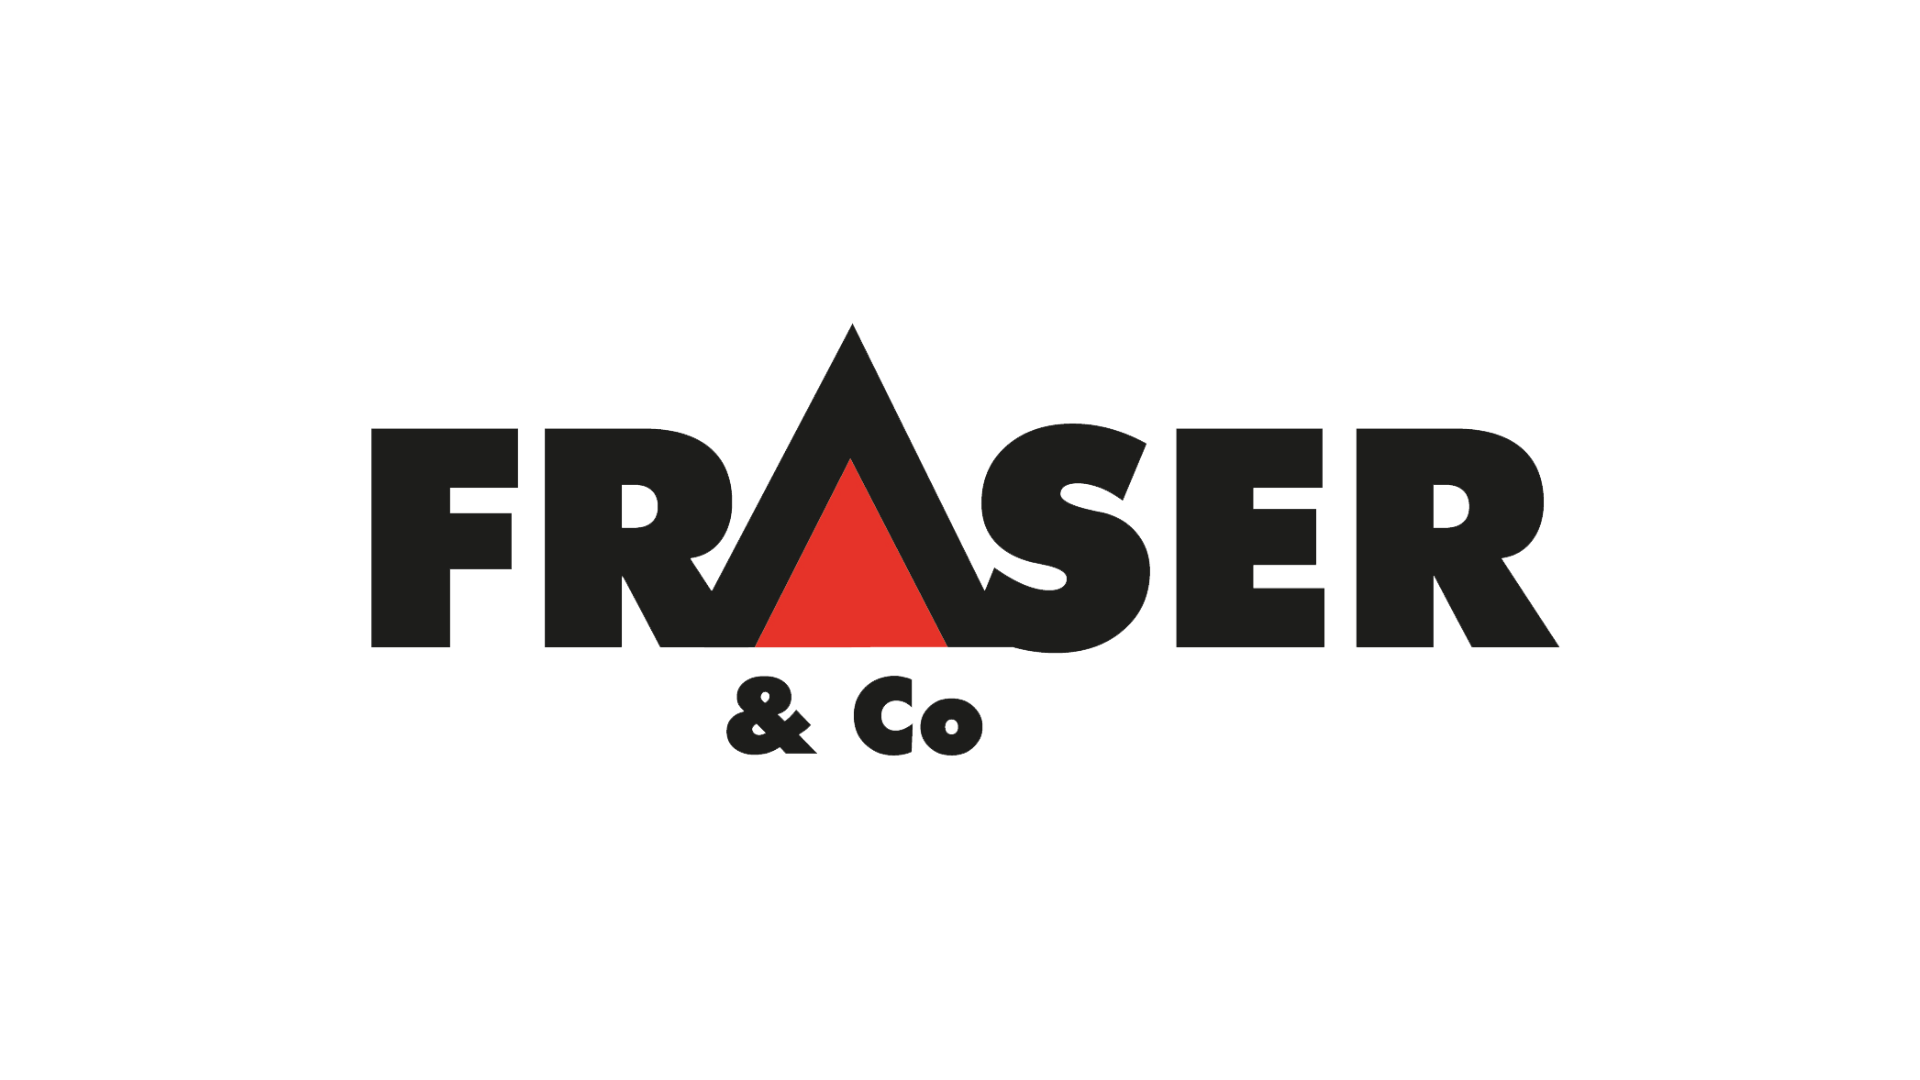 Fraser & Co